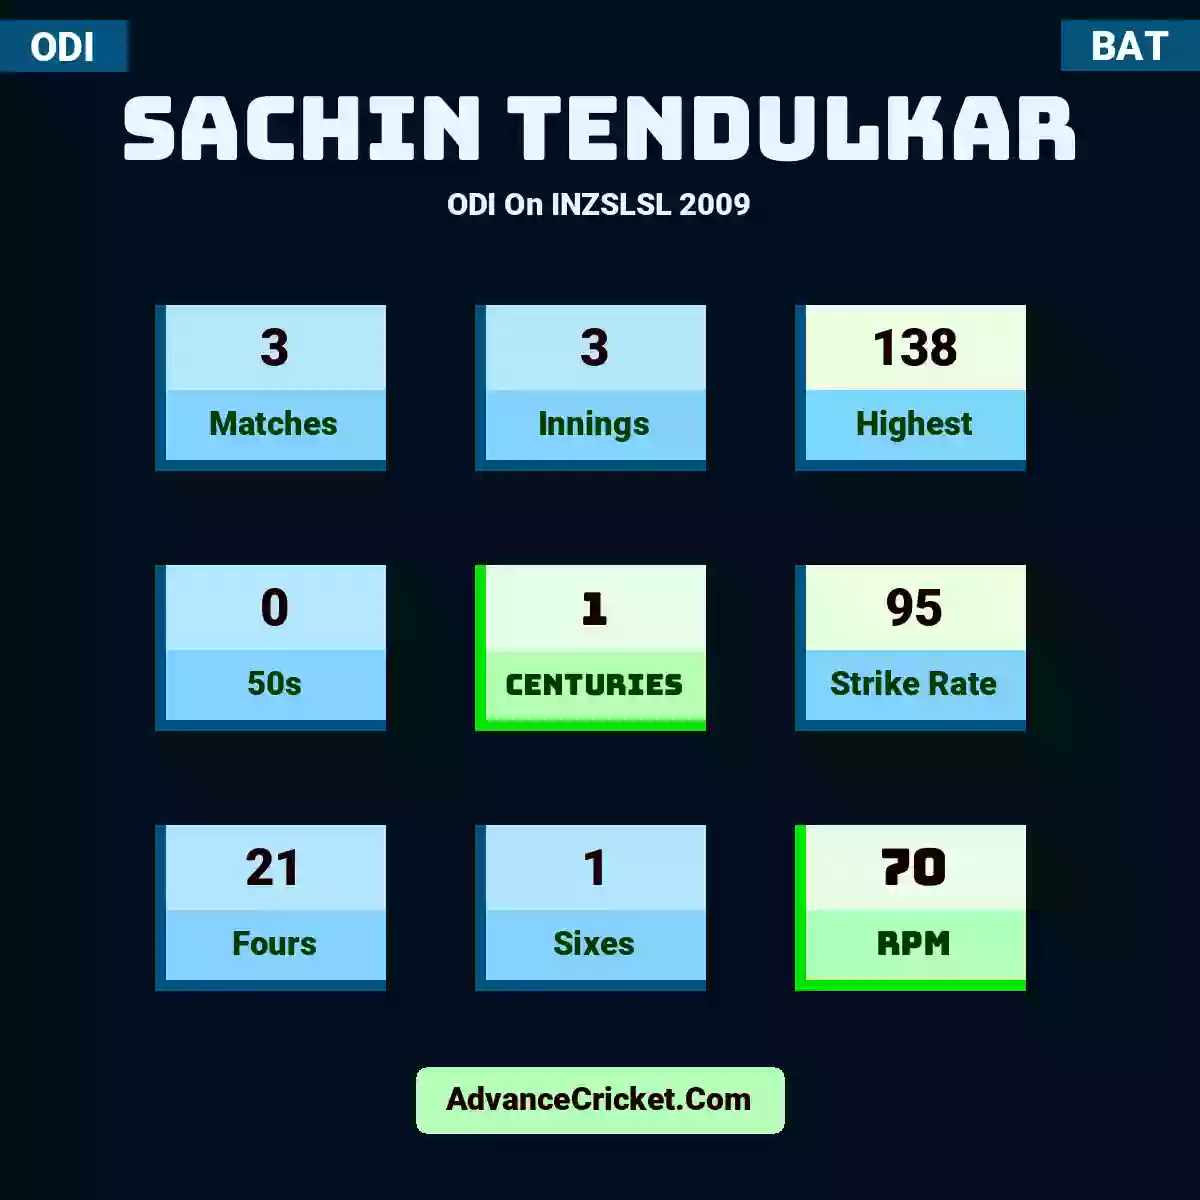 Sachin Tendulkar ODI  On INZSLSL 2009, Sachin Tendulkar played 3 matches, scored 138 runs as highest, 0 half-centuries, and 1 centuries, with a strike rate of 95. S.Tendulkar hit 21 fours and 1 sixes, with an RPM of 70.